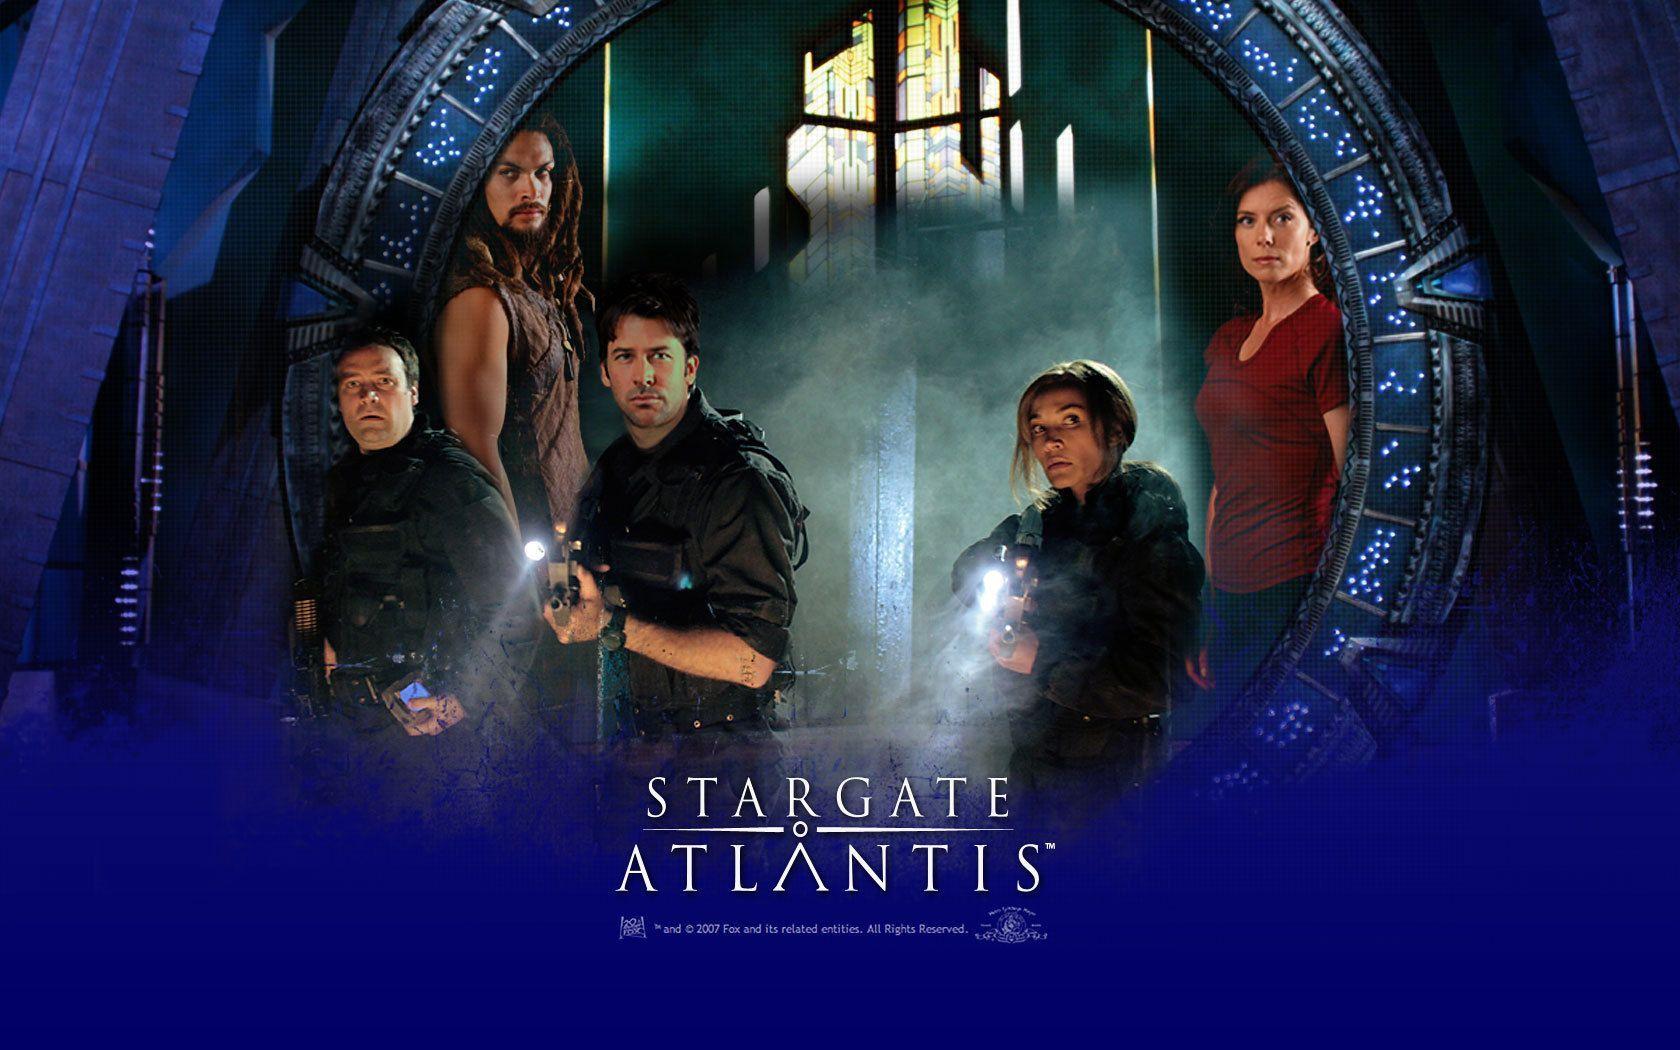 Stargate Atlantis Wallpapers - Wallpaper Cave